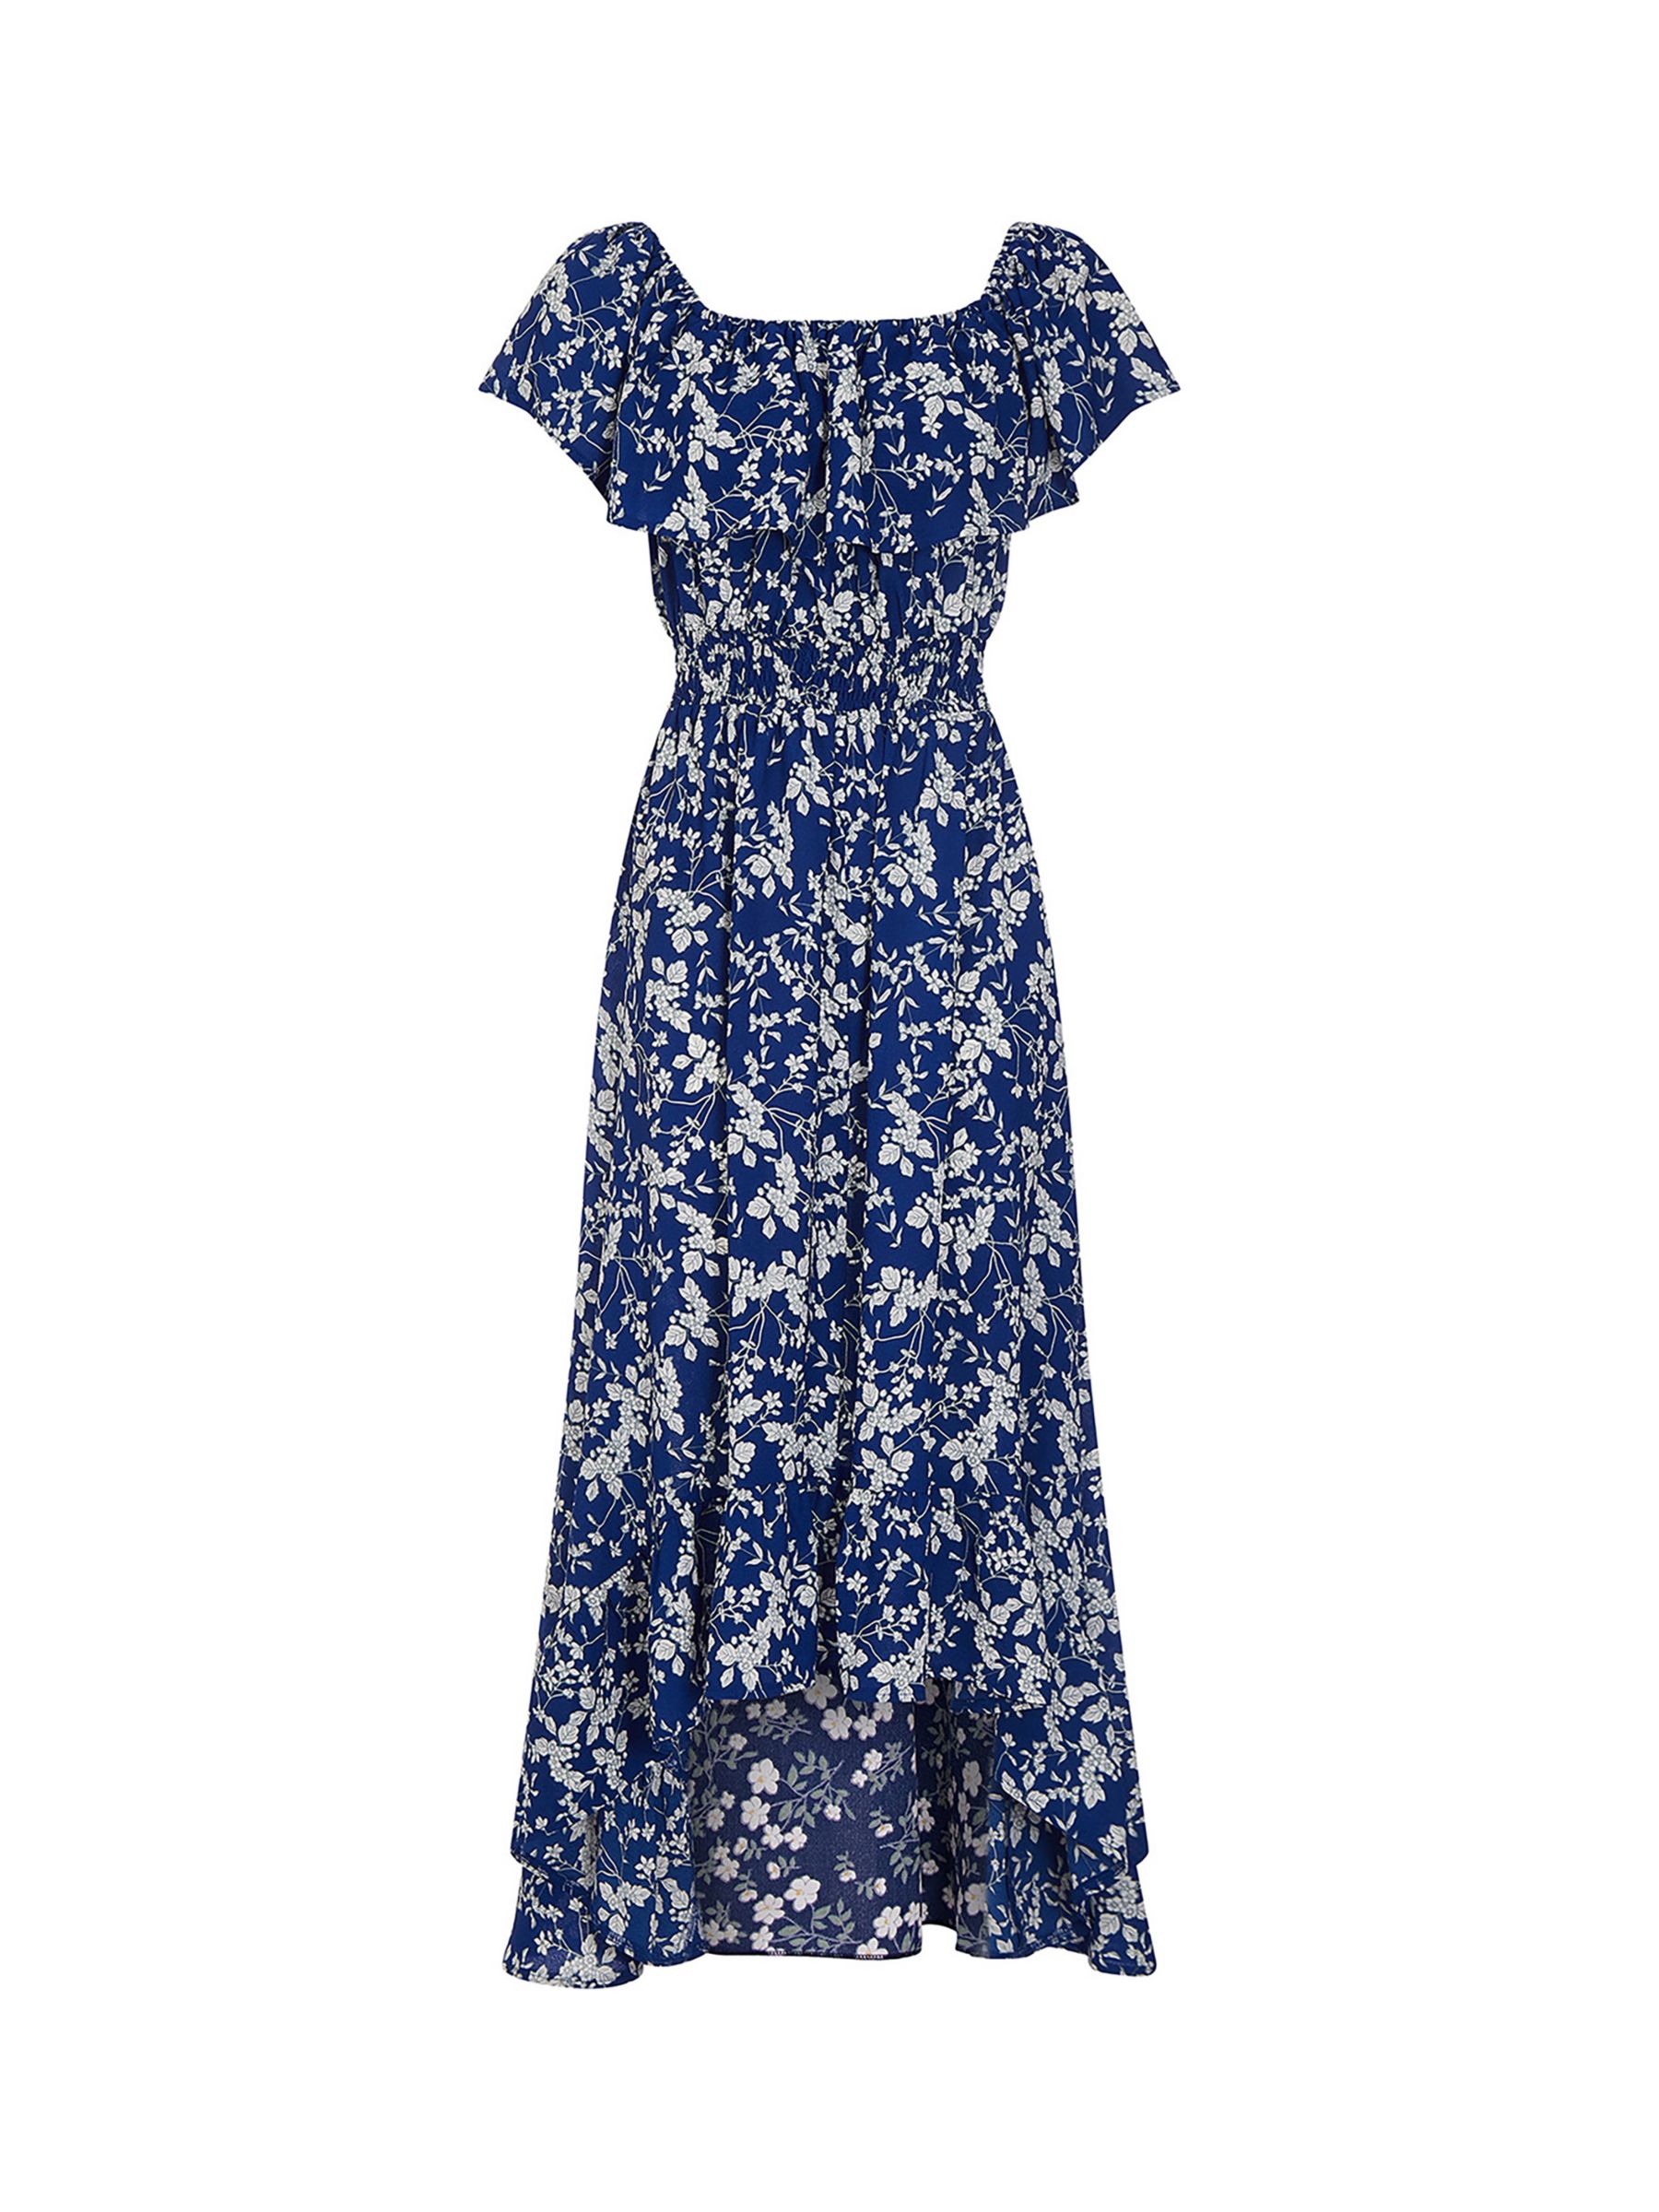 Mela London Ditsy Print Bardot Dipped Hem Dress, Blue, 18